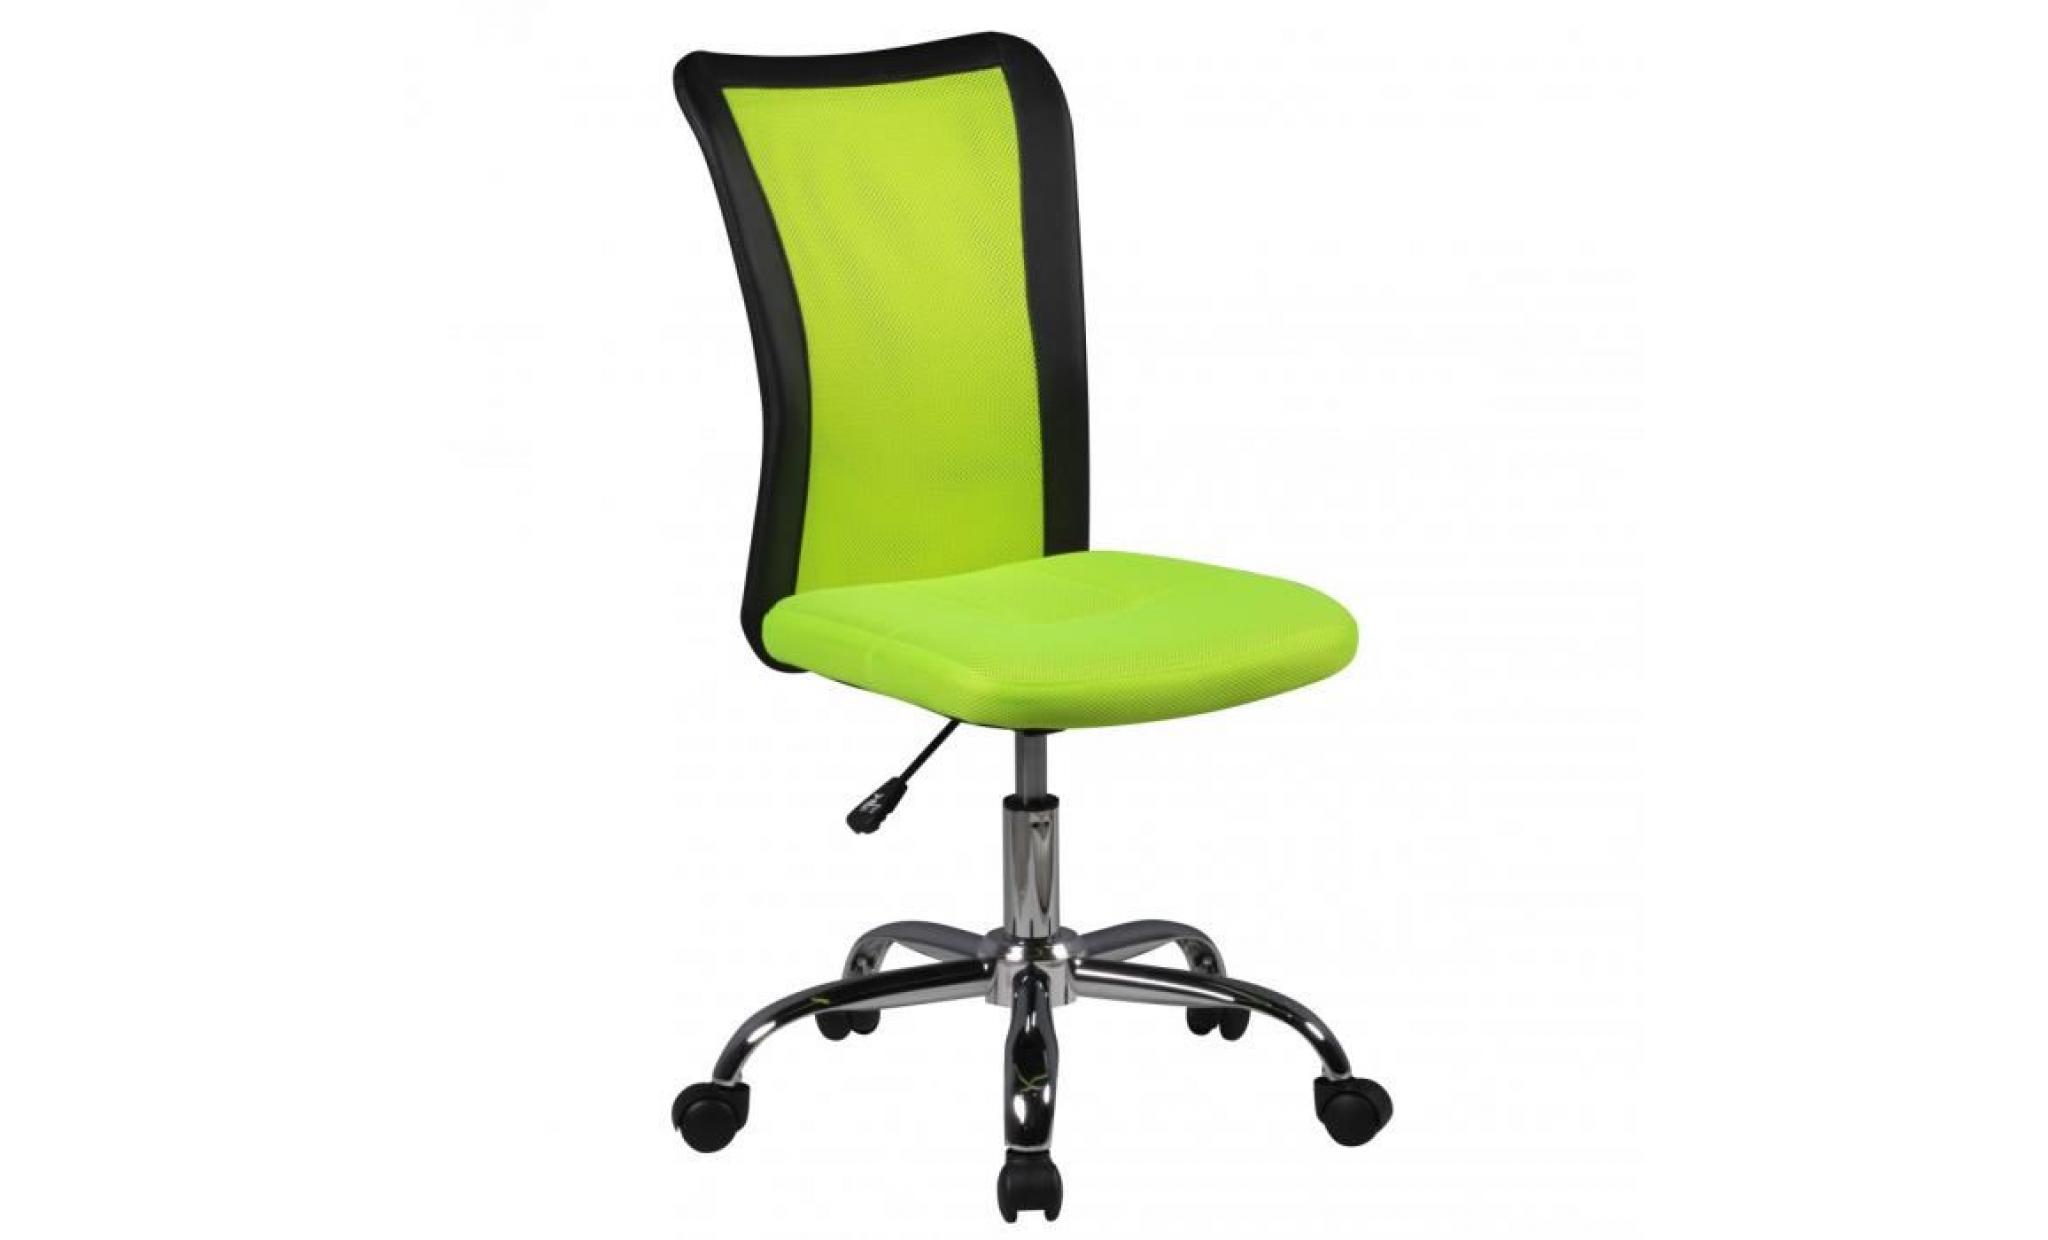 amstyle chaise de bureau enfants lukas vert pour les enfants de 6 avec dossier et roulettes de sol souples chaise jeunesse